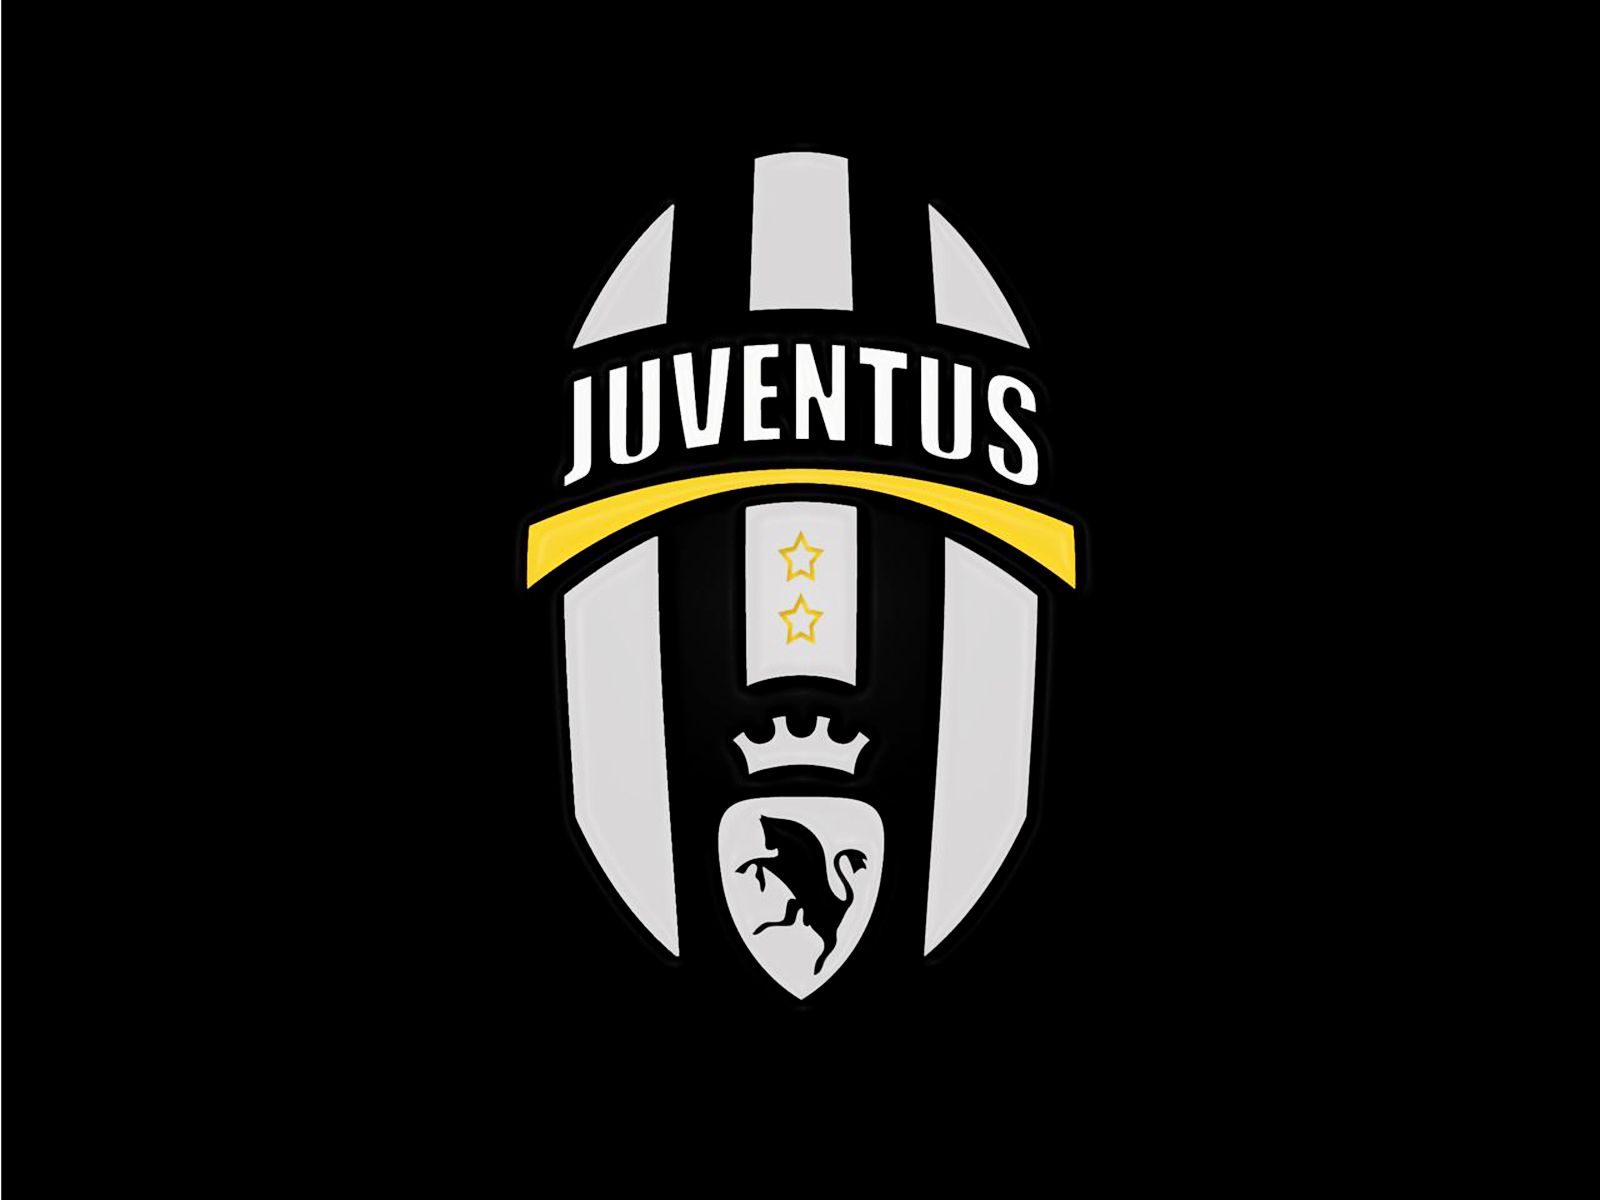 Juventus F.C. Backgrounds, Compatible - PC, Mobile, Gadgets| 1600x1200 px